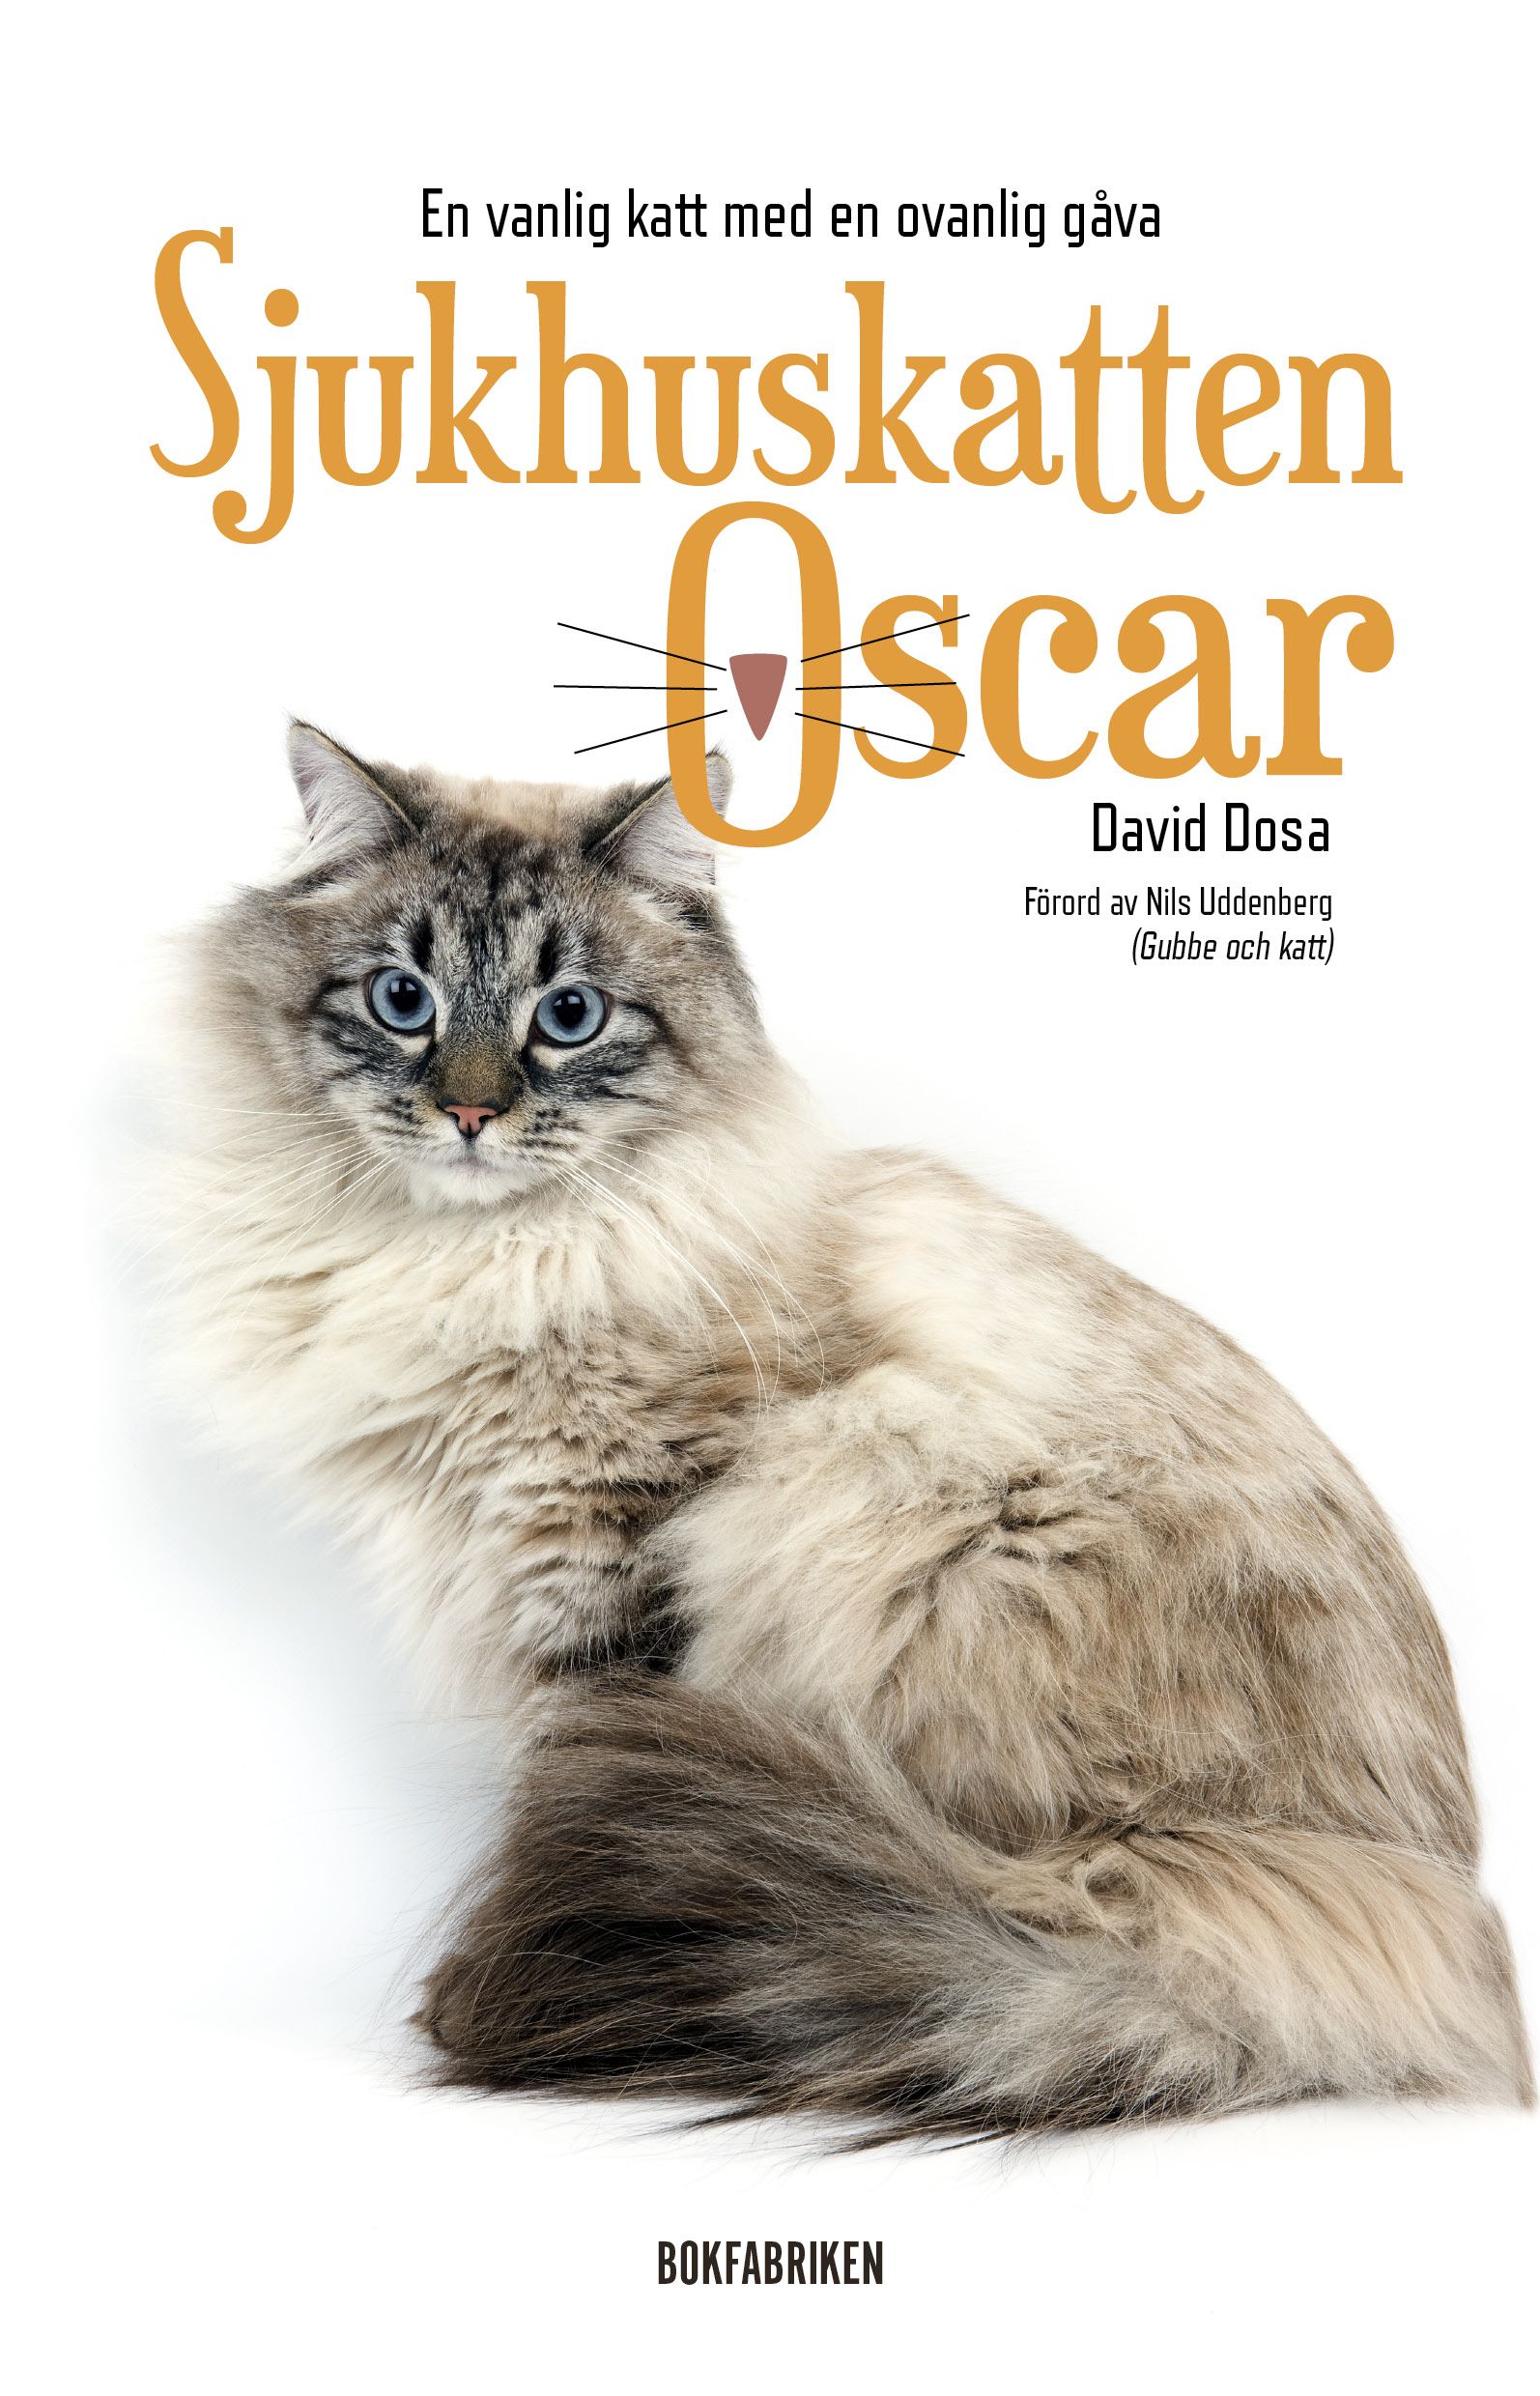 Sjukhuskatten Oscar : En vanlig katt med en ovanlig gåva, eBook by David Dosa